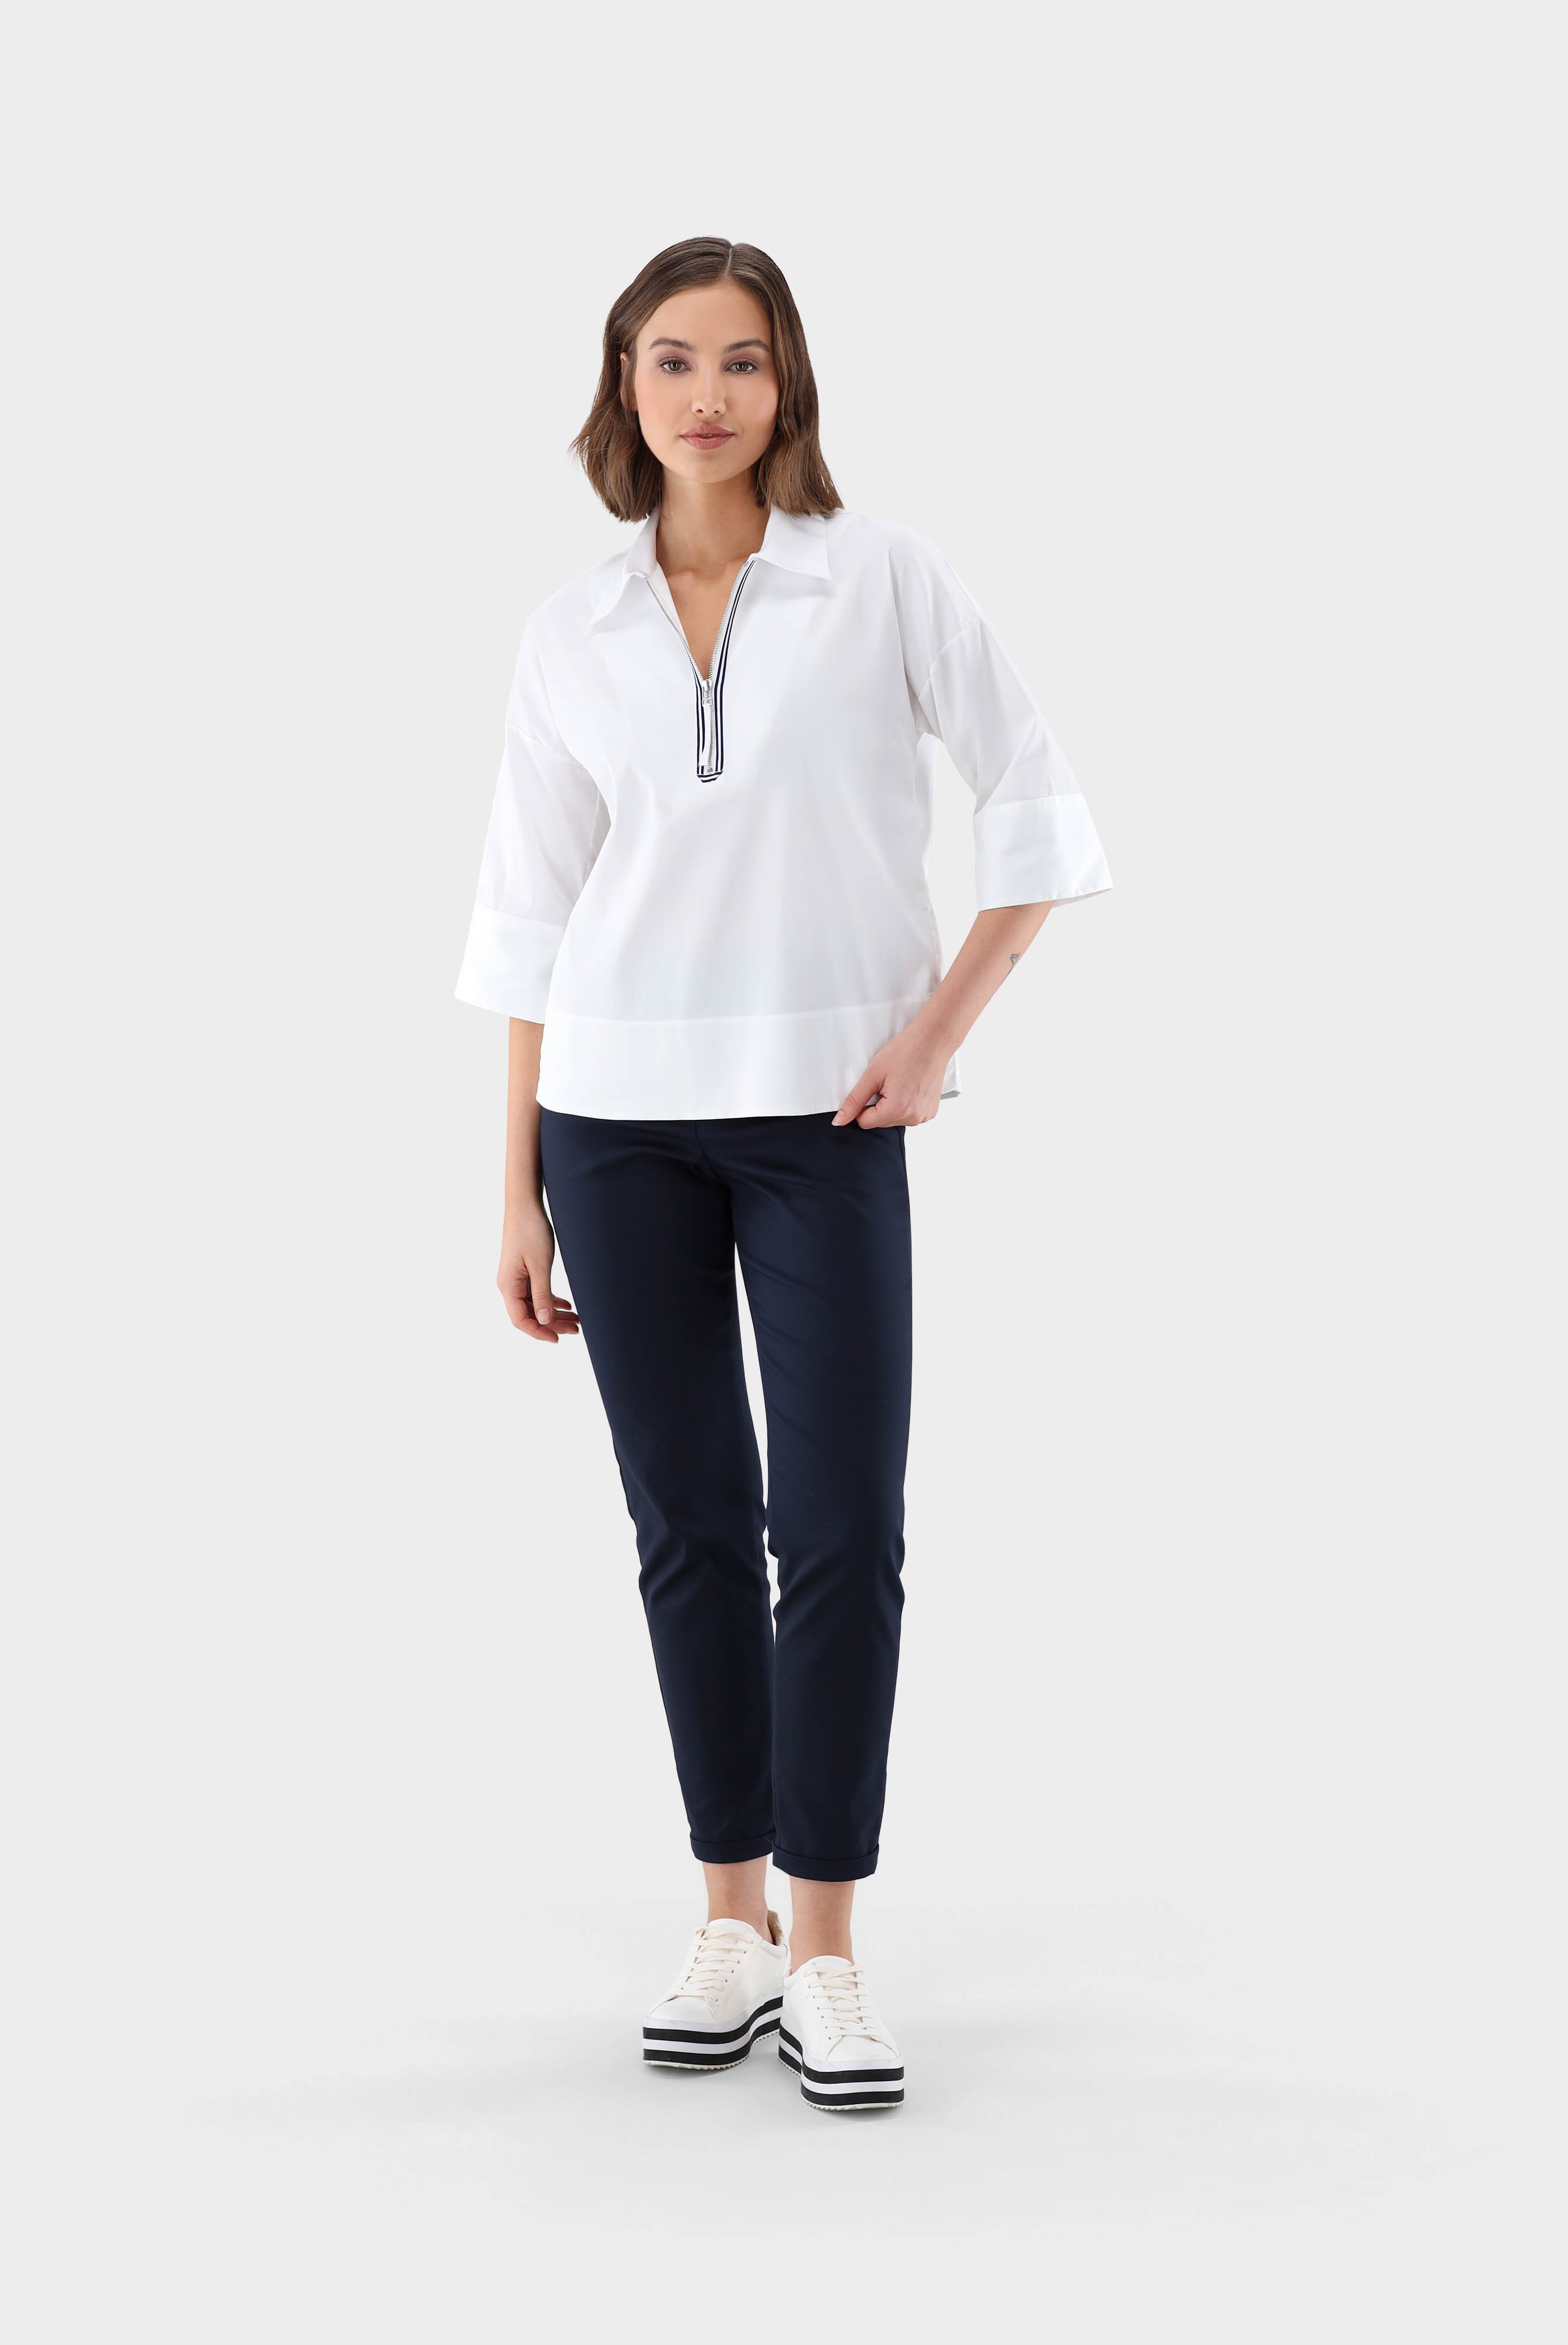 Business Blouses+A-line zip neck shirt blouse+05.529D.24.130830.000.32